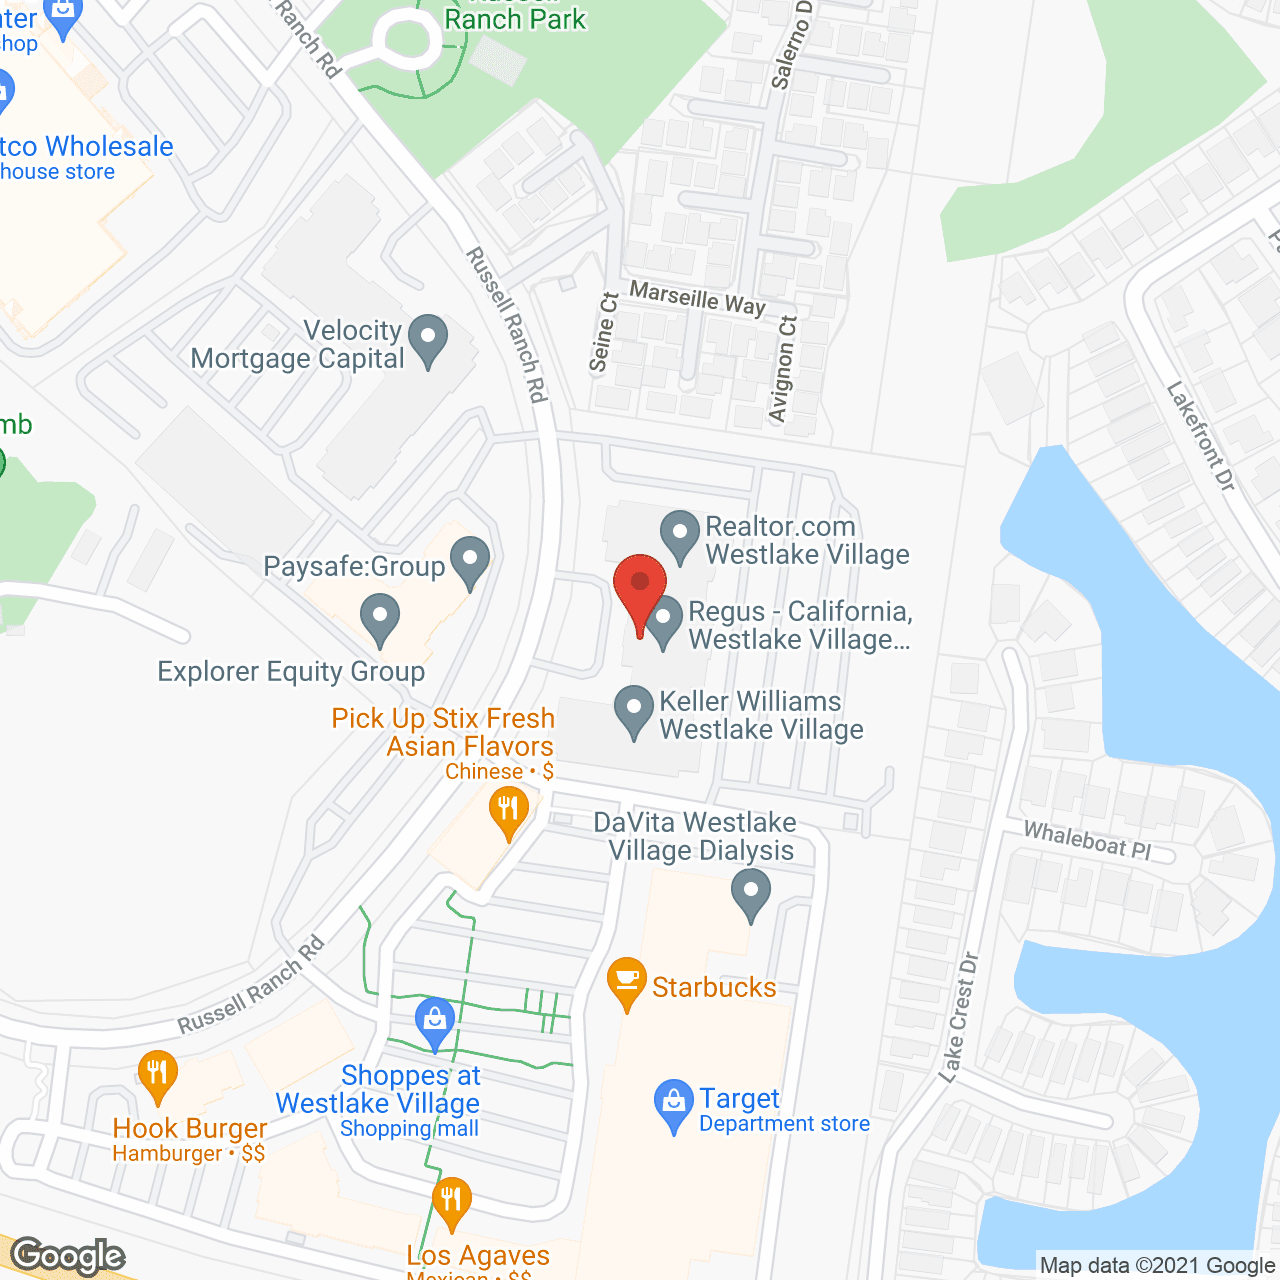 TheKey of Westlake Village, CA in google map